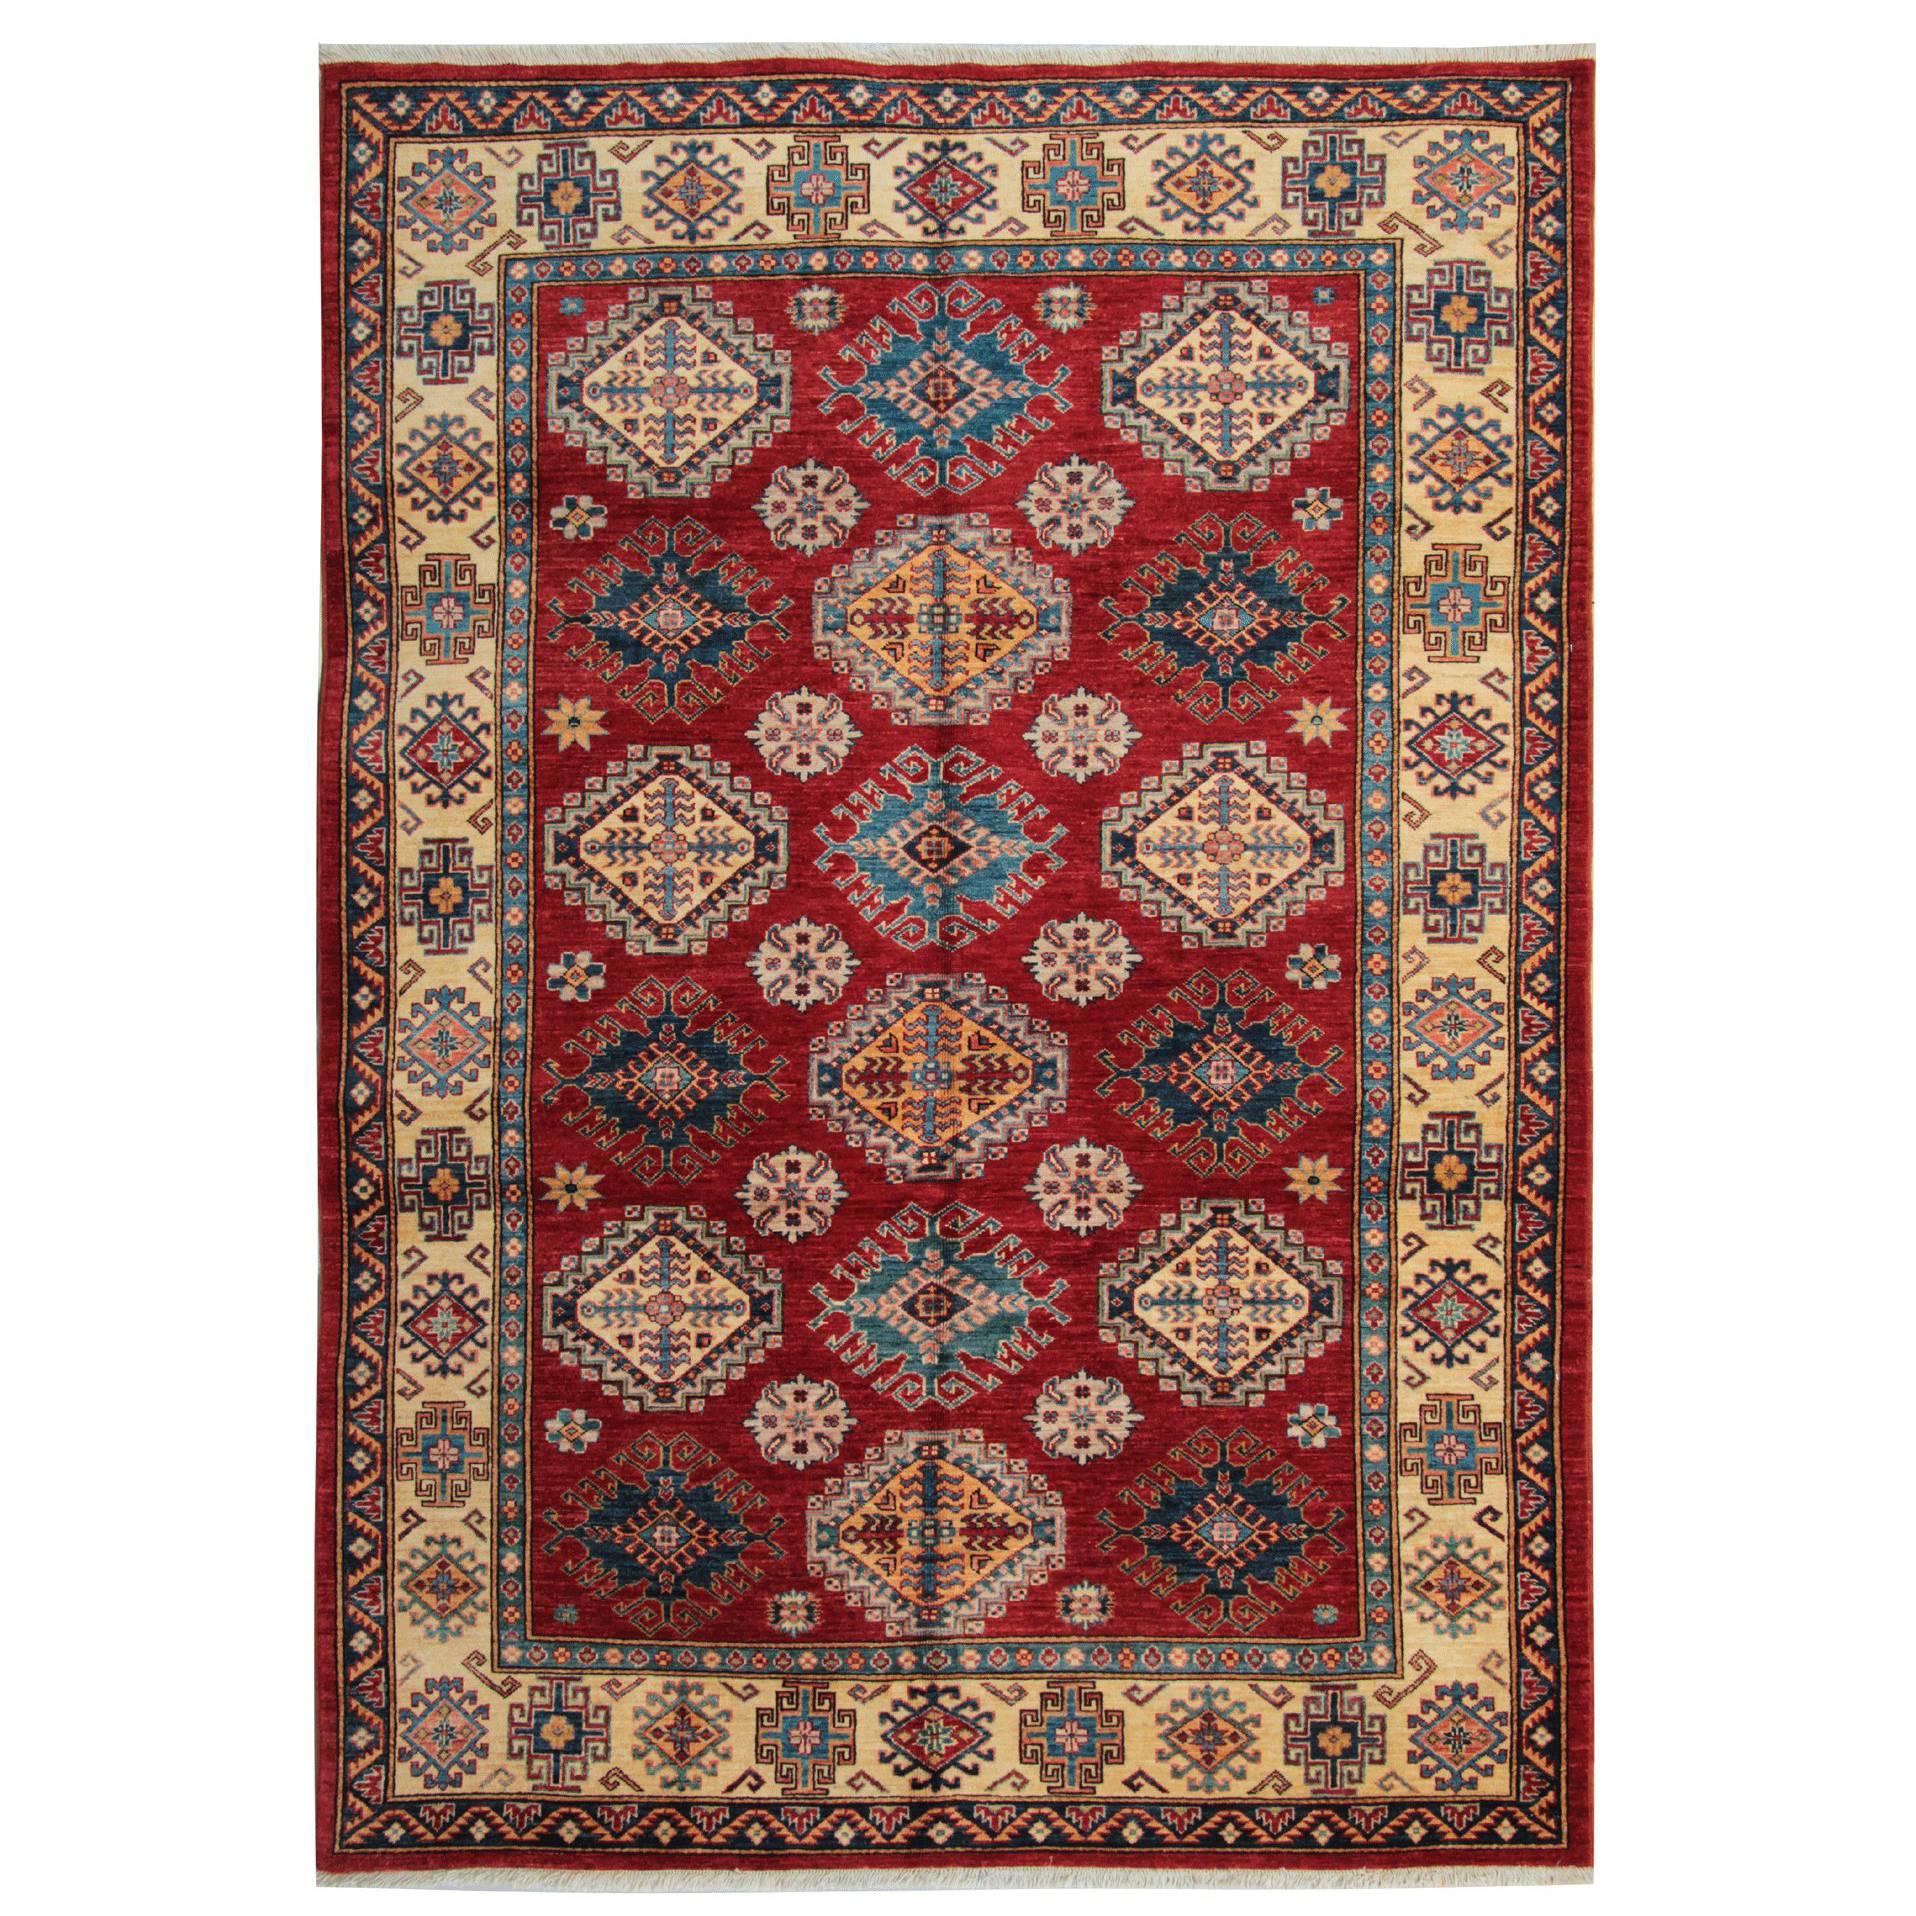 Persian Style Rugs, Afghan Rugs, Kazak Rugs, Carpet from Afghanistan